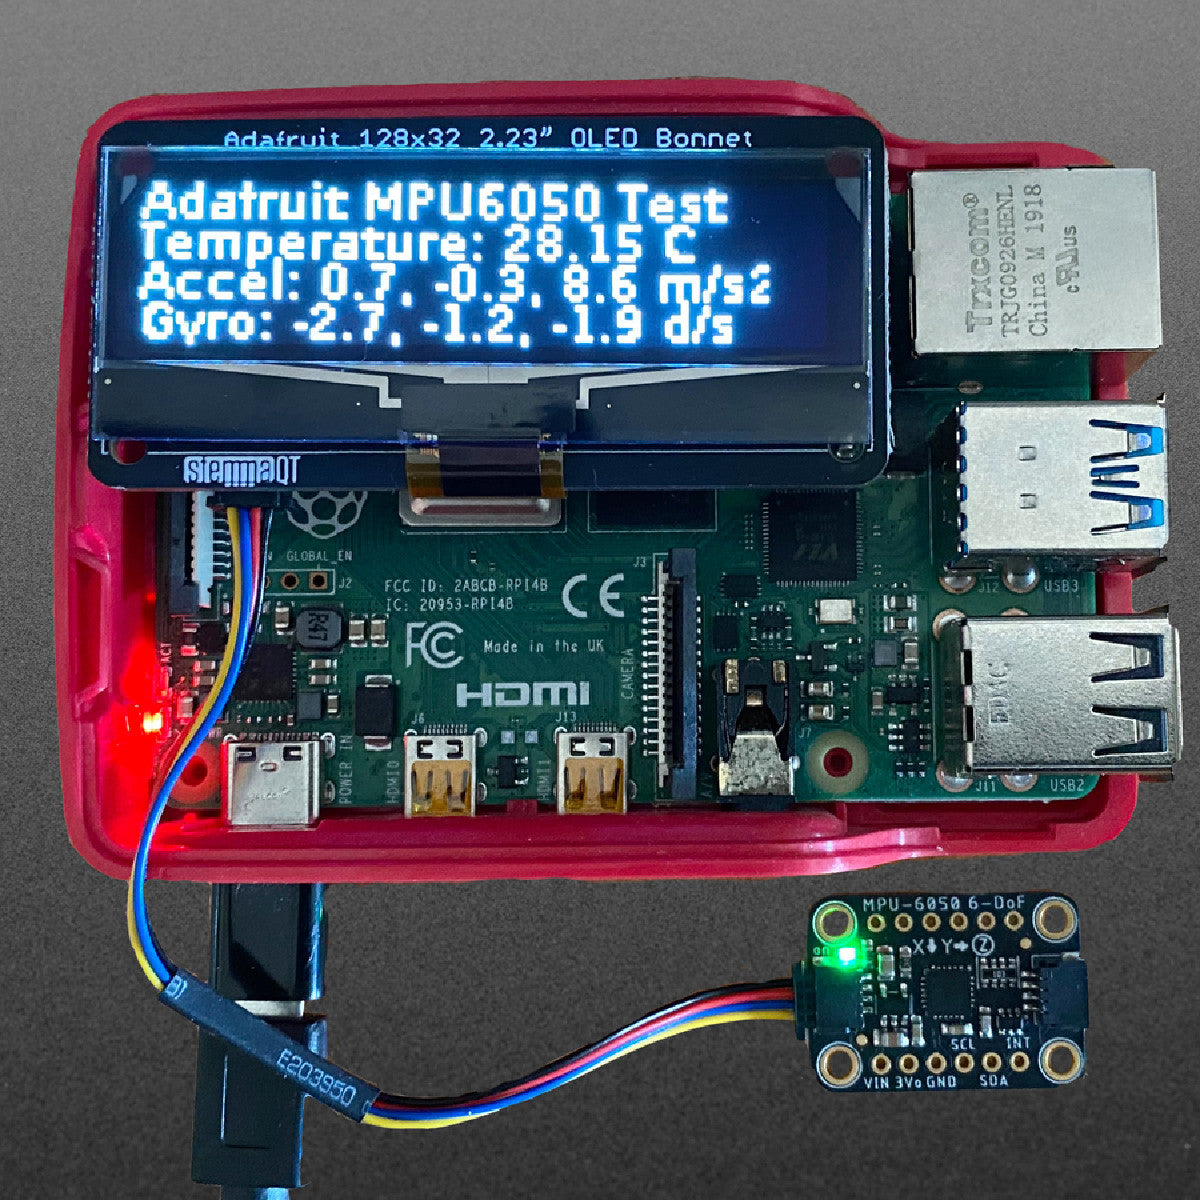 Adafruit 2.23" Monochrome OLED Bonnet for Raspberry Pi